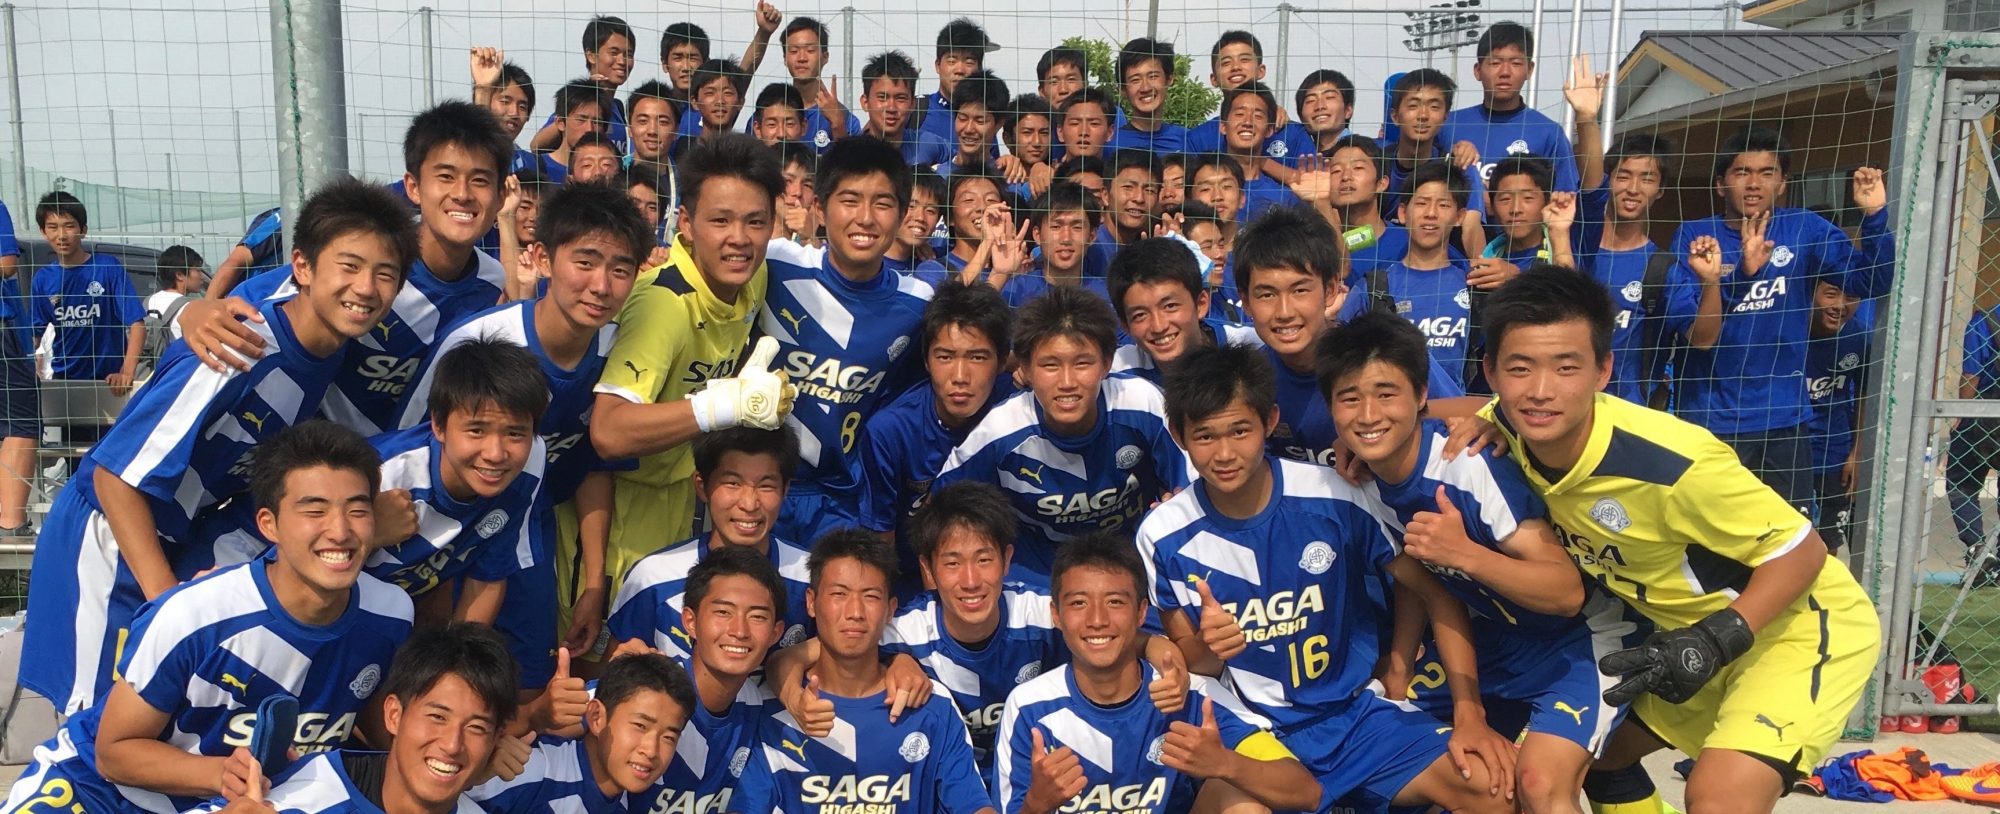 高校サッカー部関係者へ 日本一のスポーツメディア専門家が制作